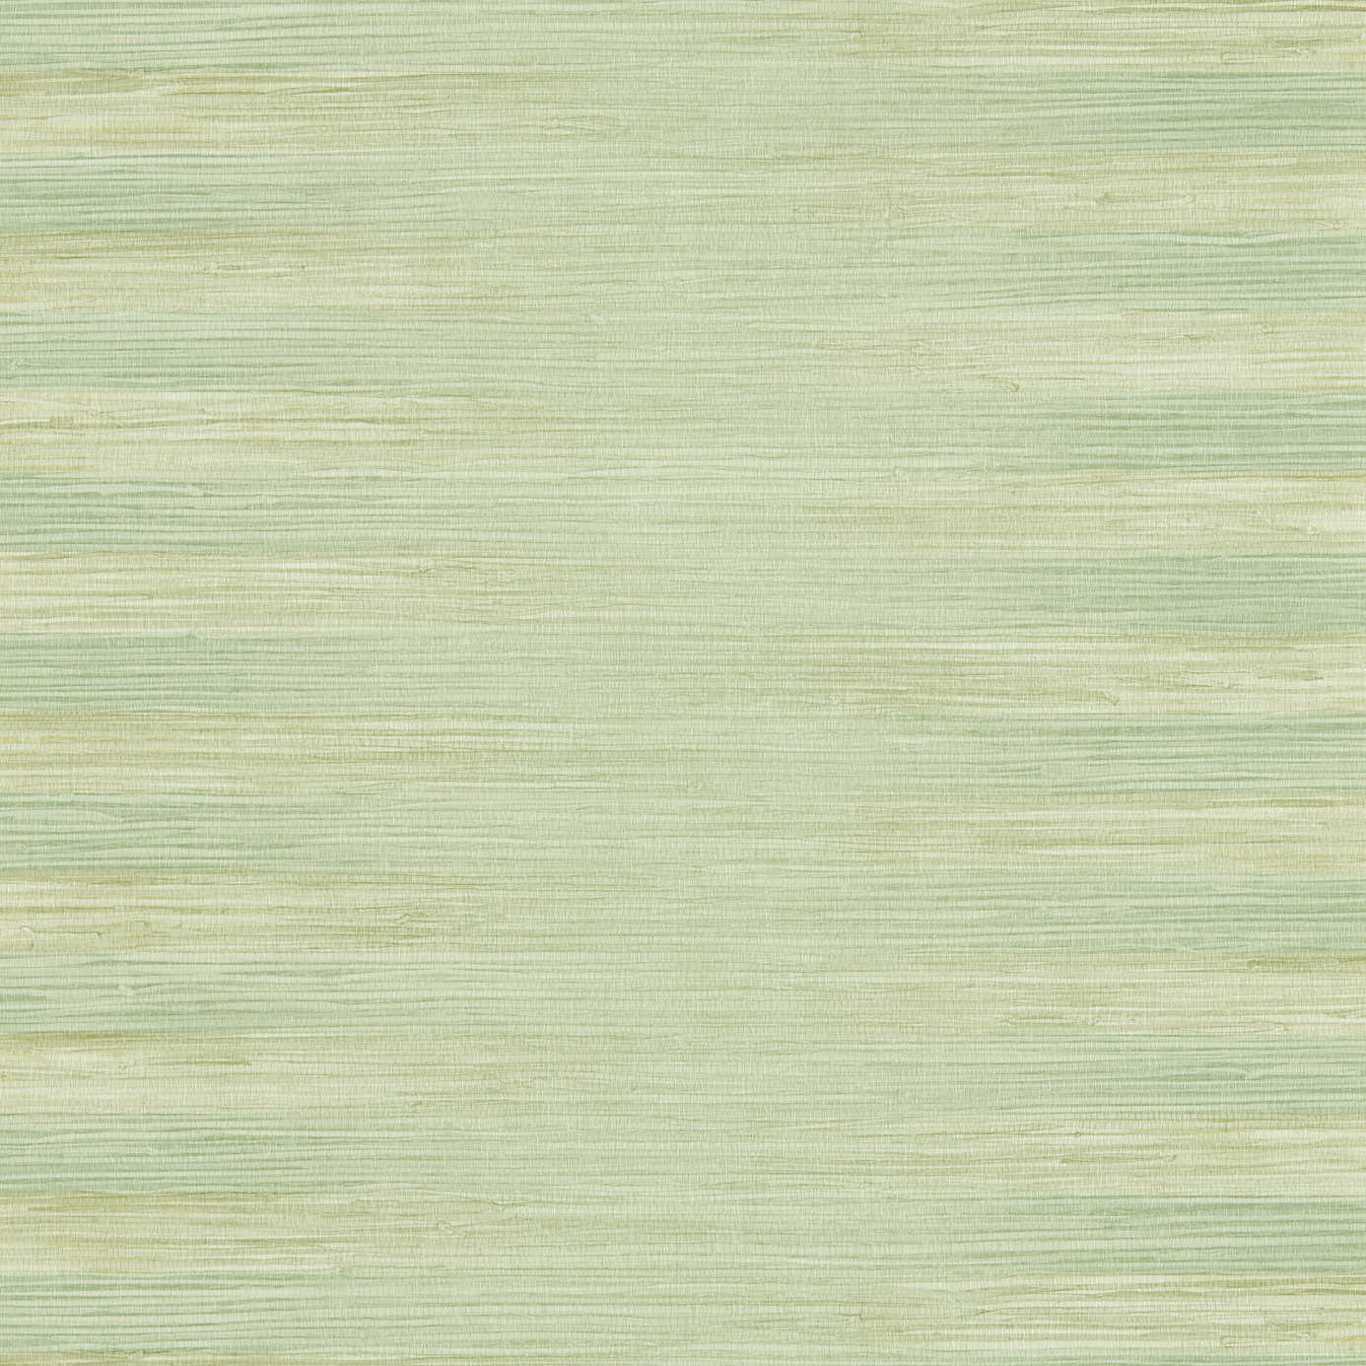 Kensington Grasscloth Evergreen Wallpaper by ZOF